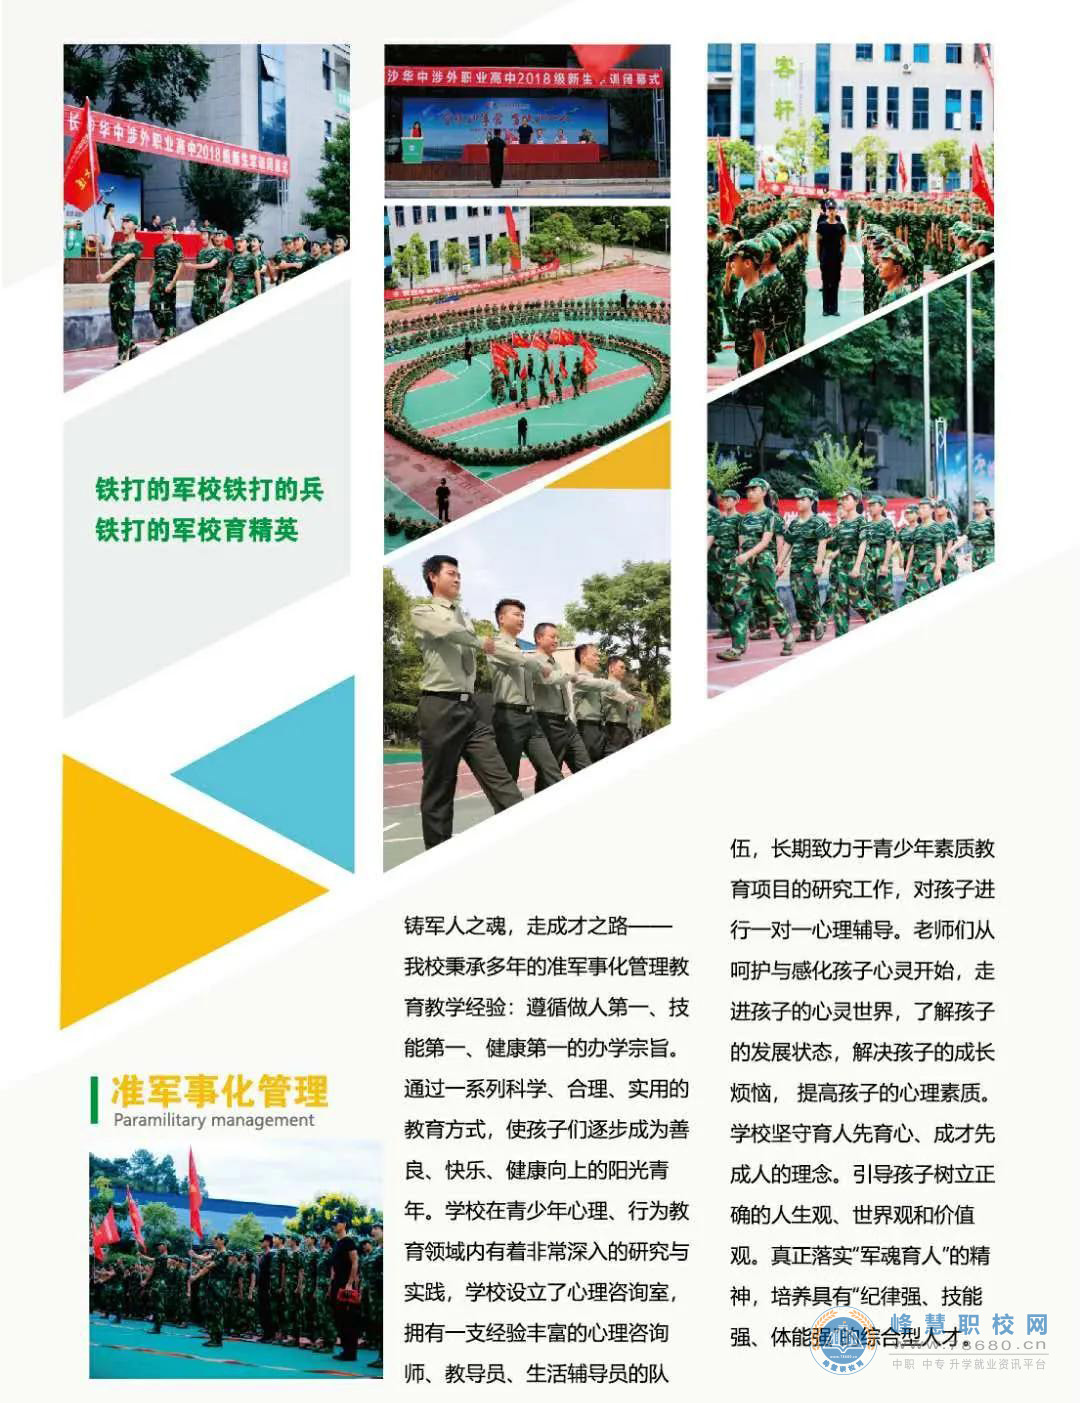  长沙华中涉外职业高中2020年招生简章 